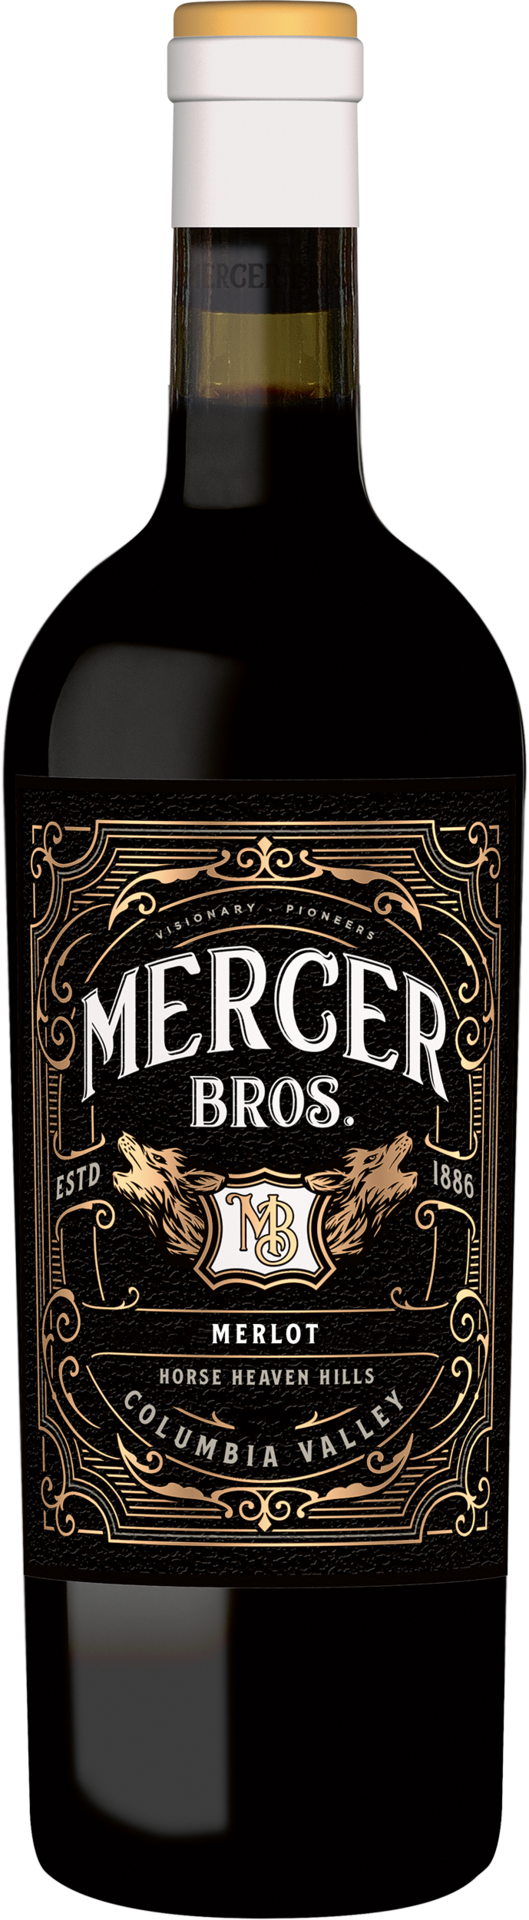 Mercer Bros. Merlot